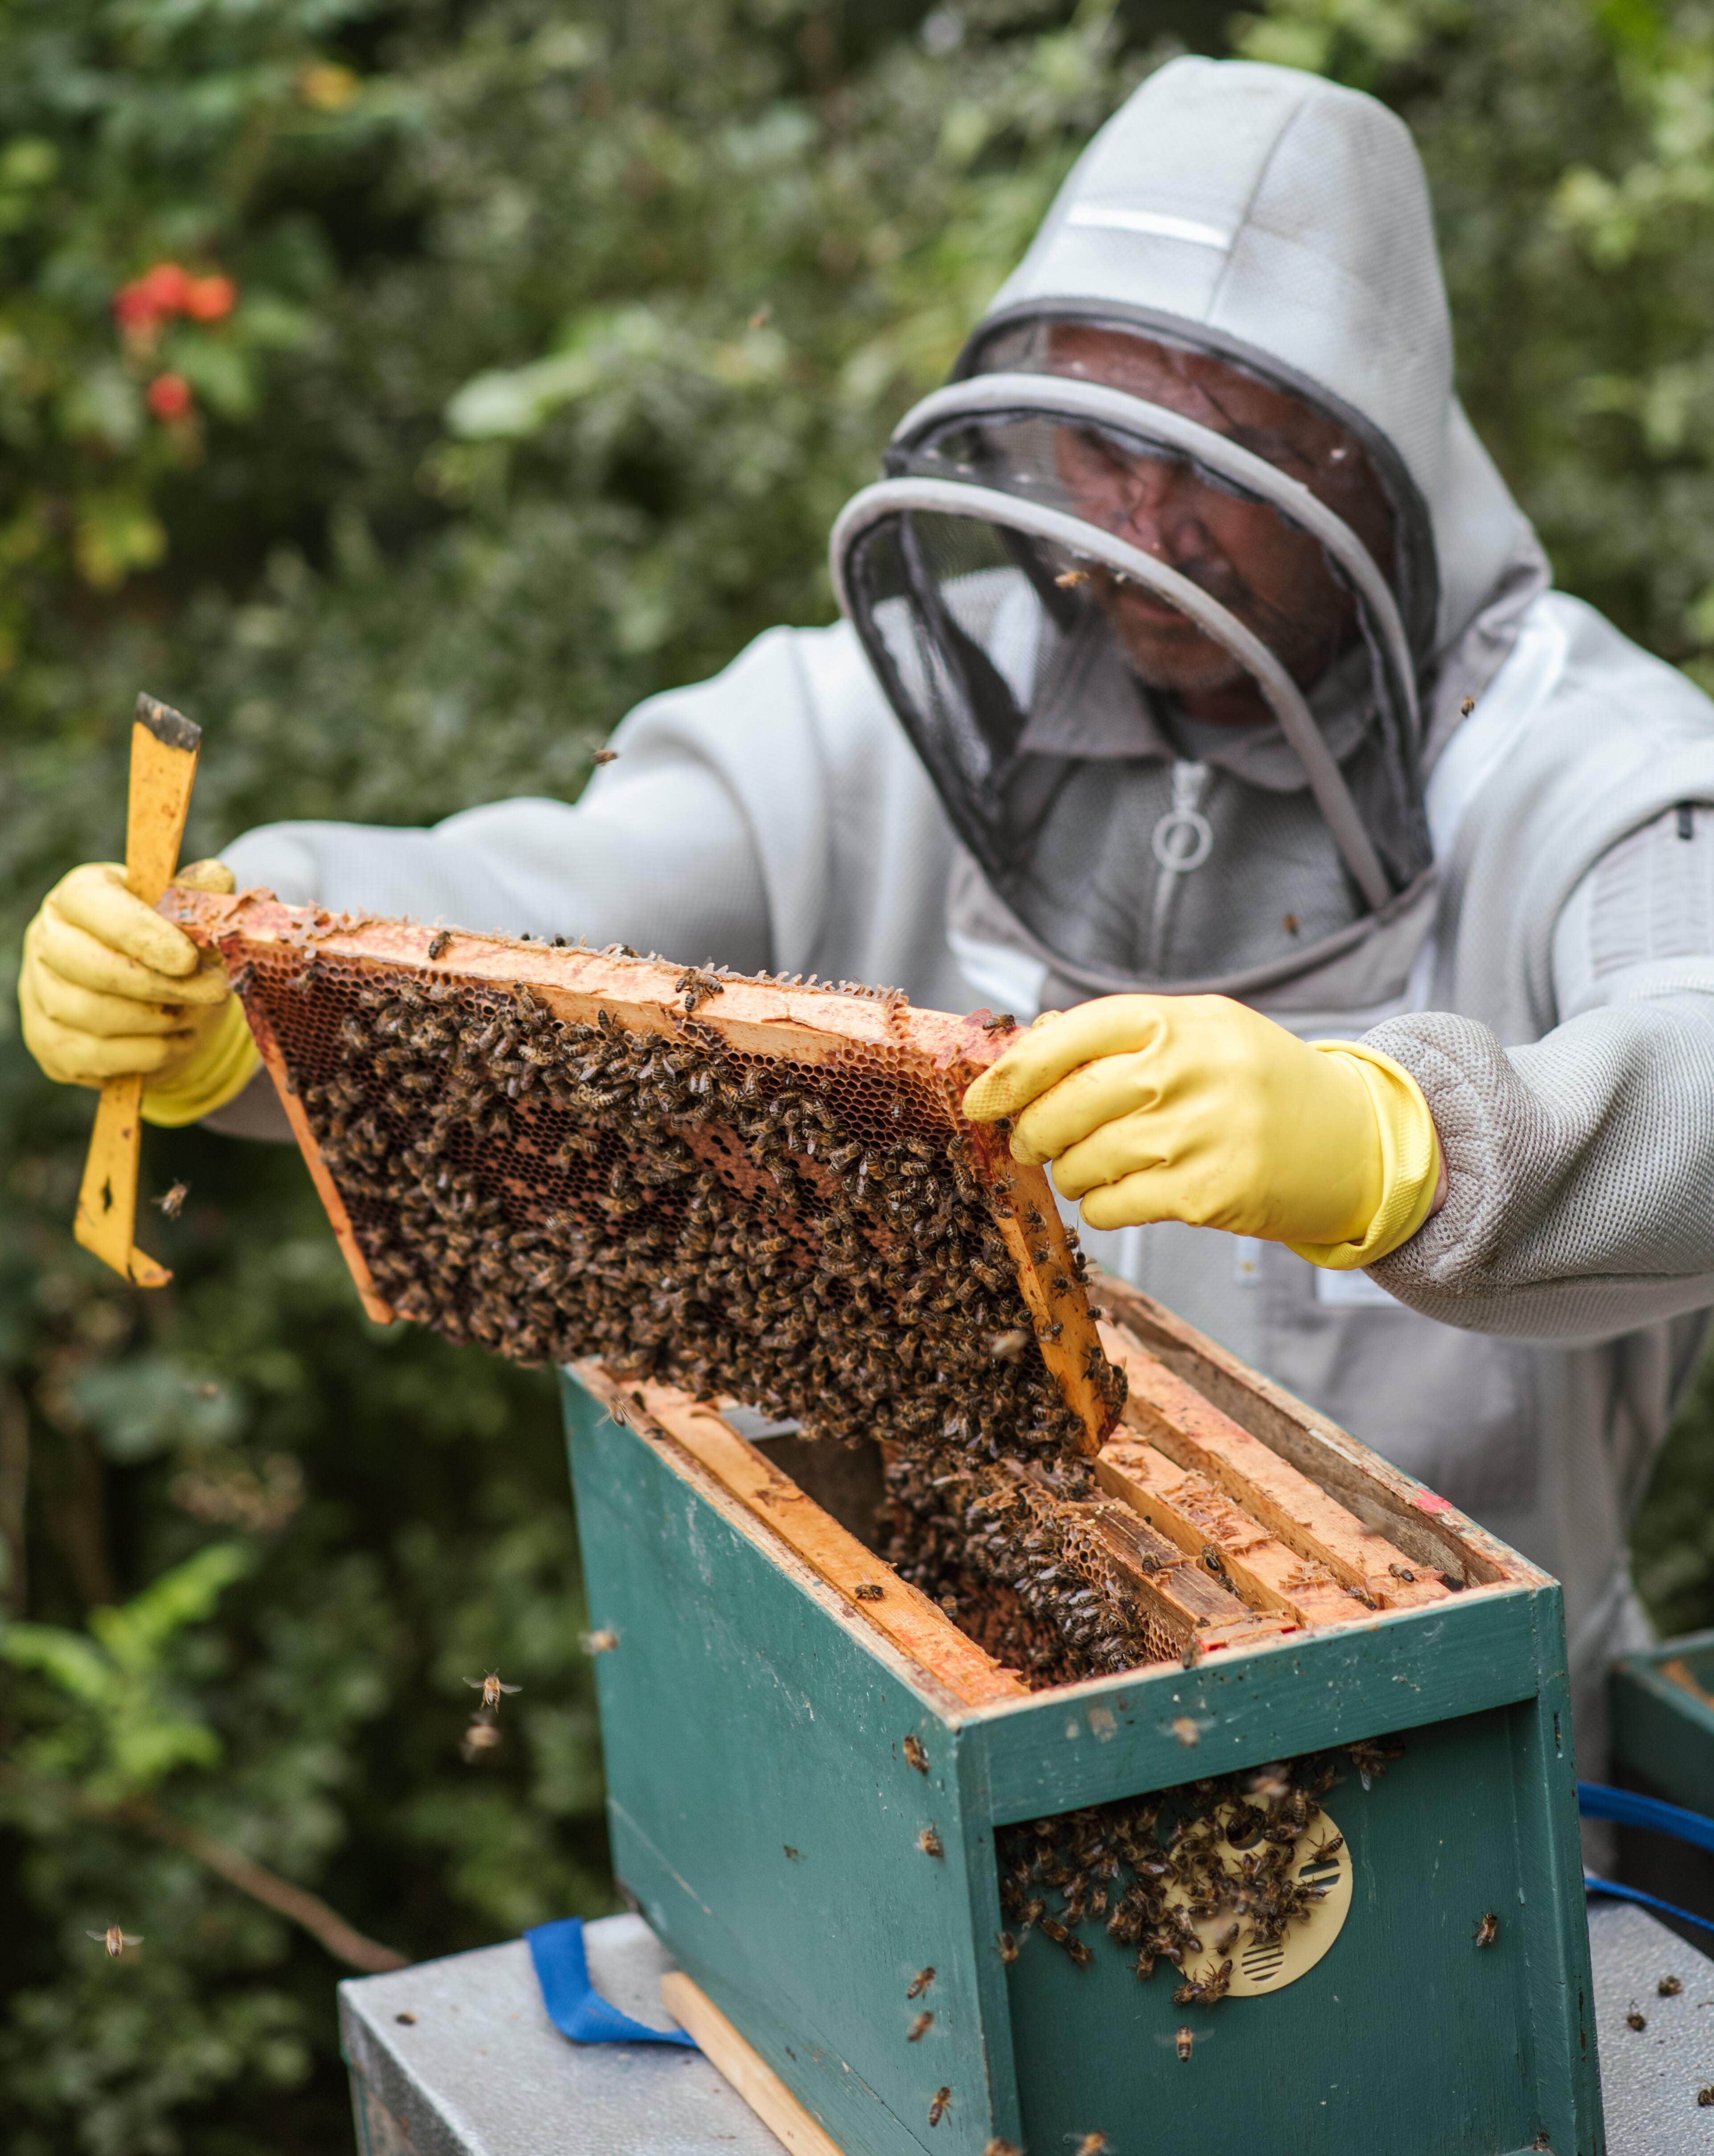 Aprilska prijava stanja na pčelinjaku